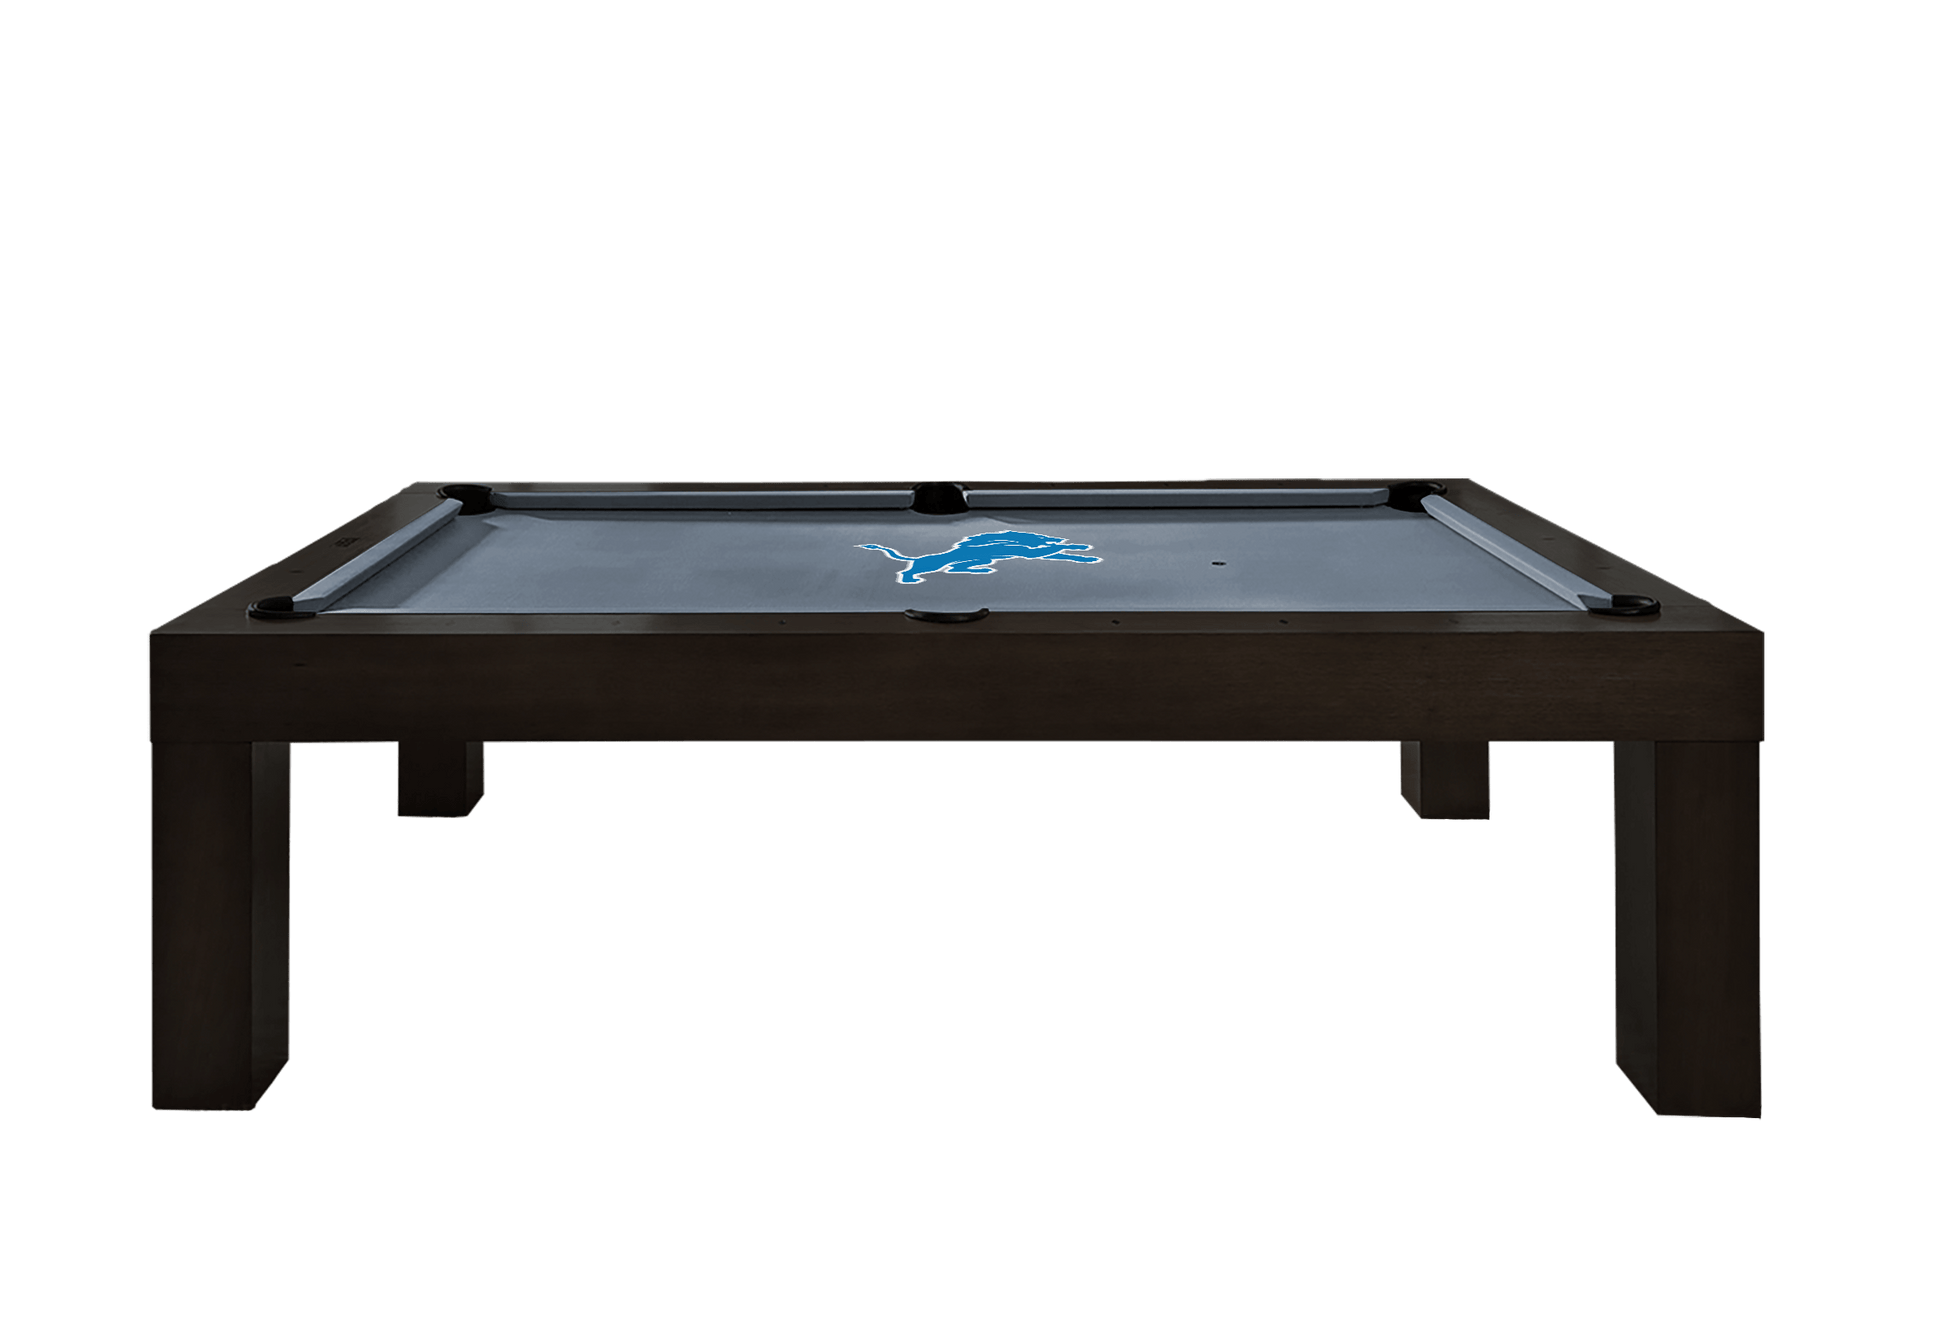 Detroit Lions Premium Pool Table Bundle - Black Ash Pool Bundle Home Arcade Games   